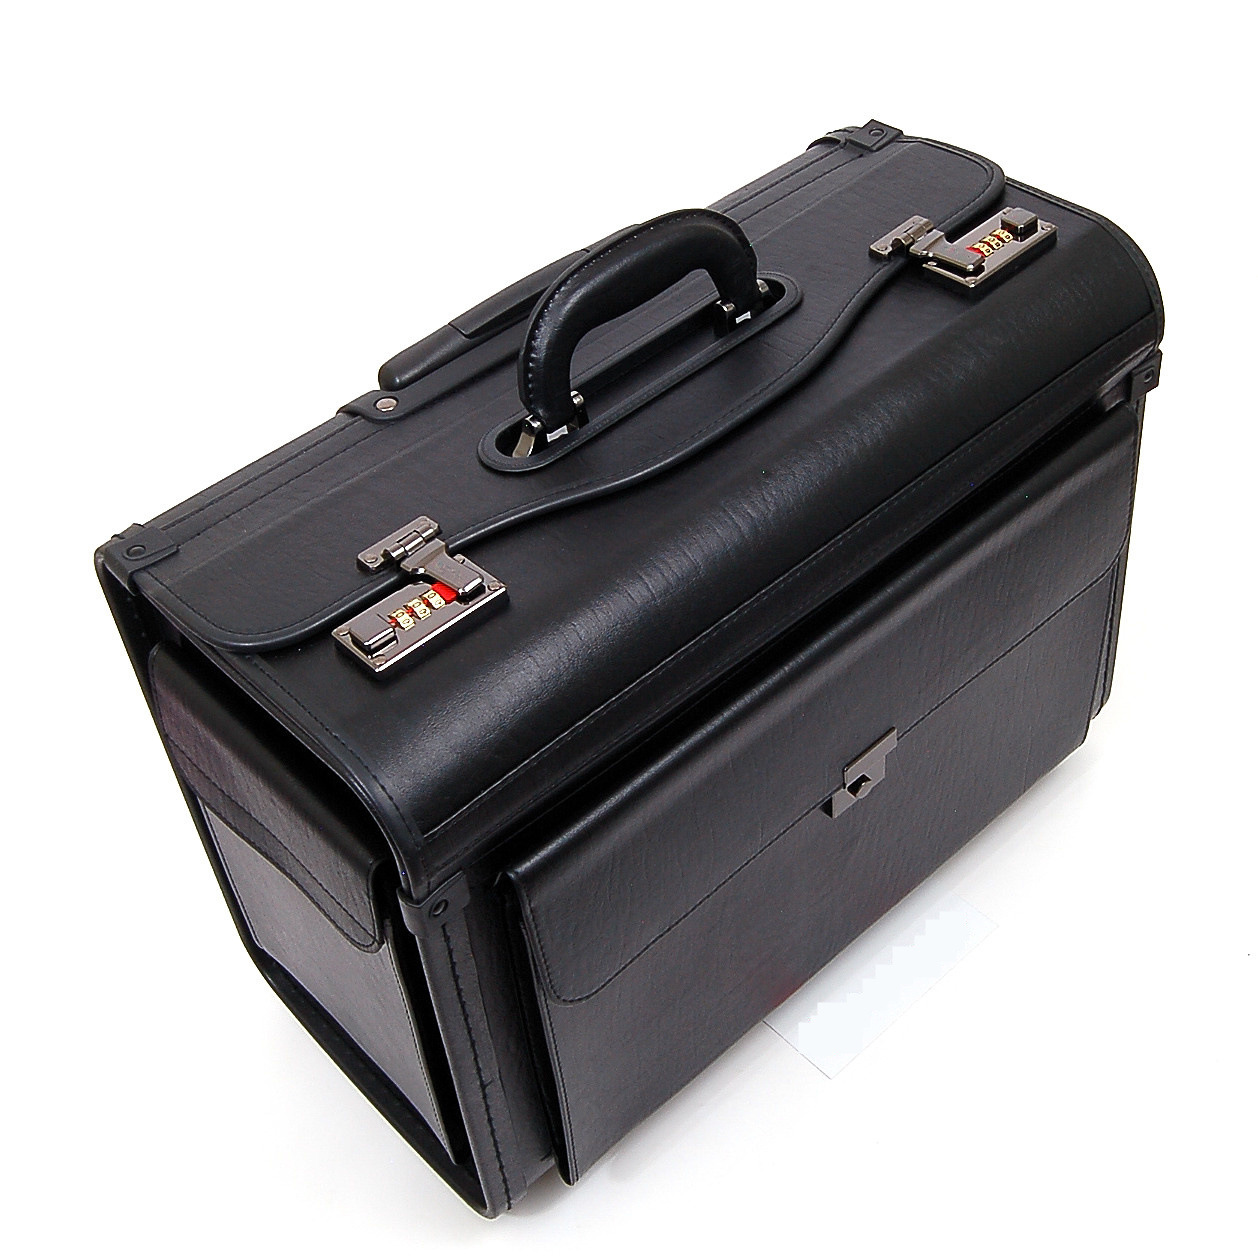 2015年坐飞机行李箱有规定尺寸吗-